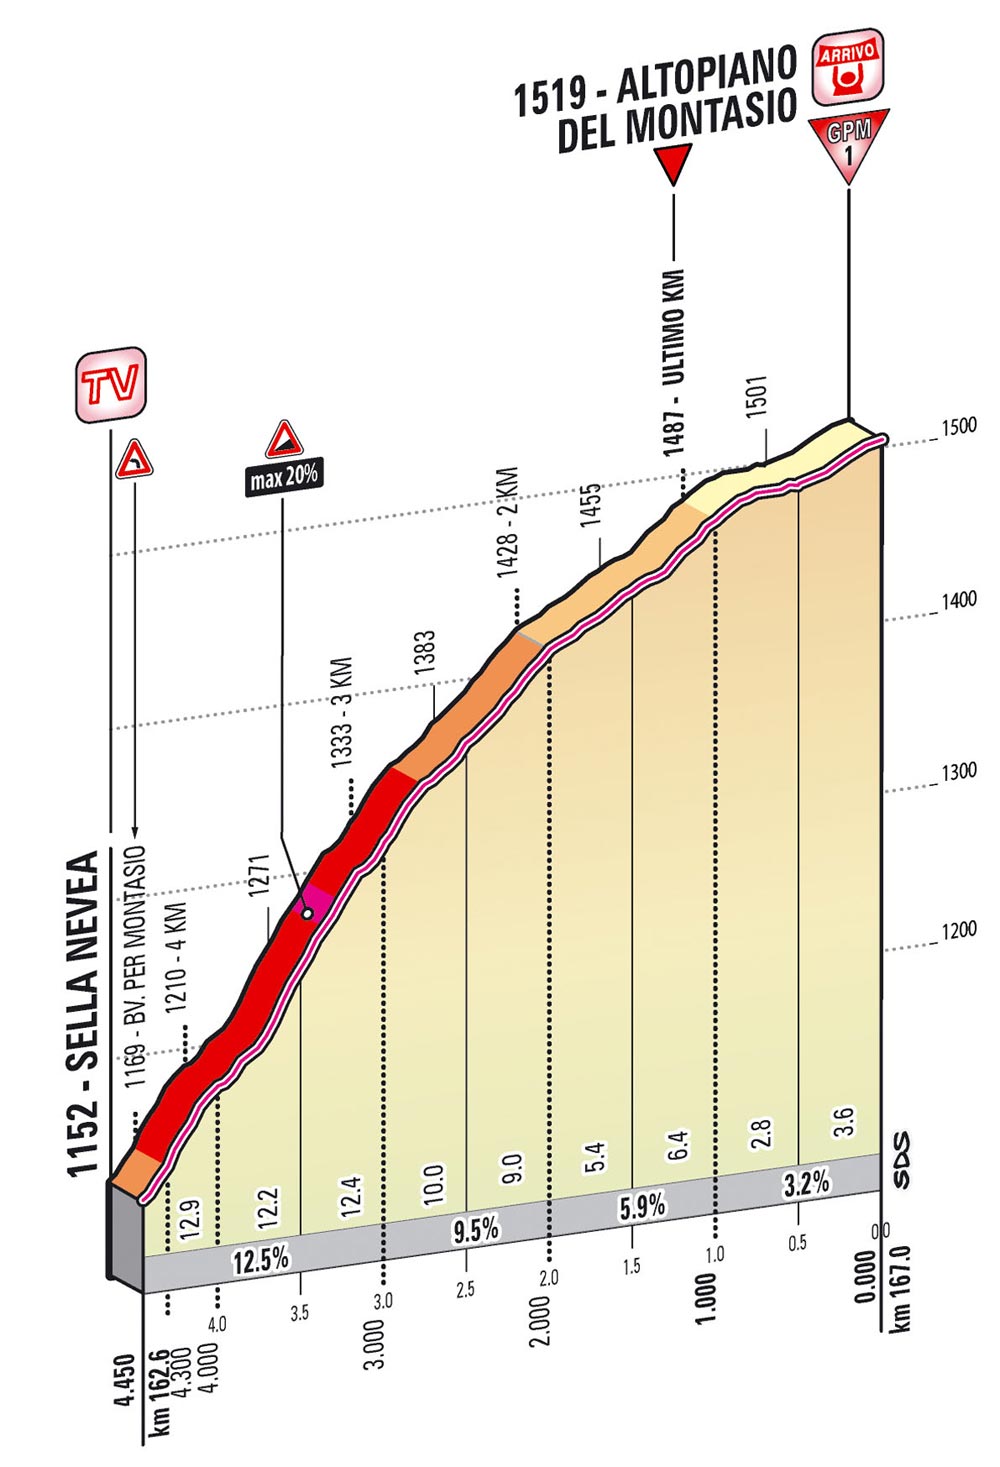 Giro 2013 - Página 7 Ukm_10